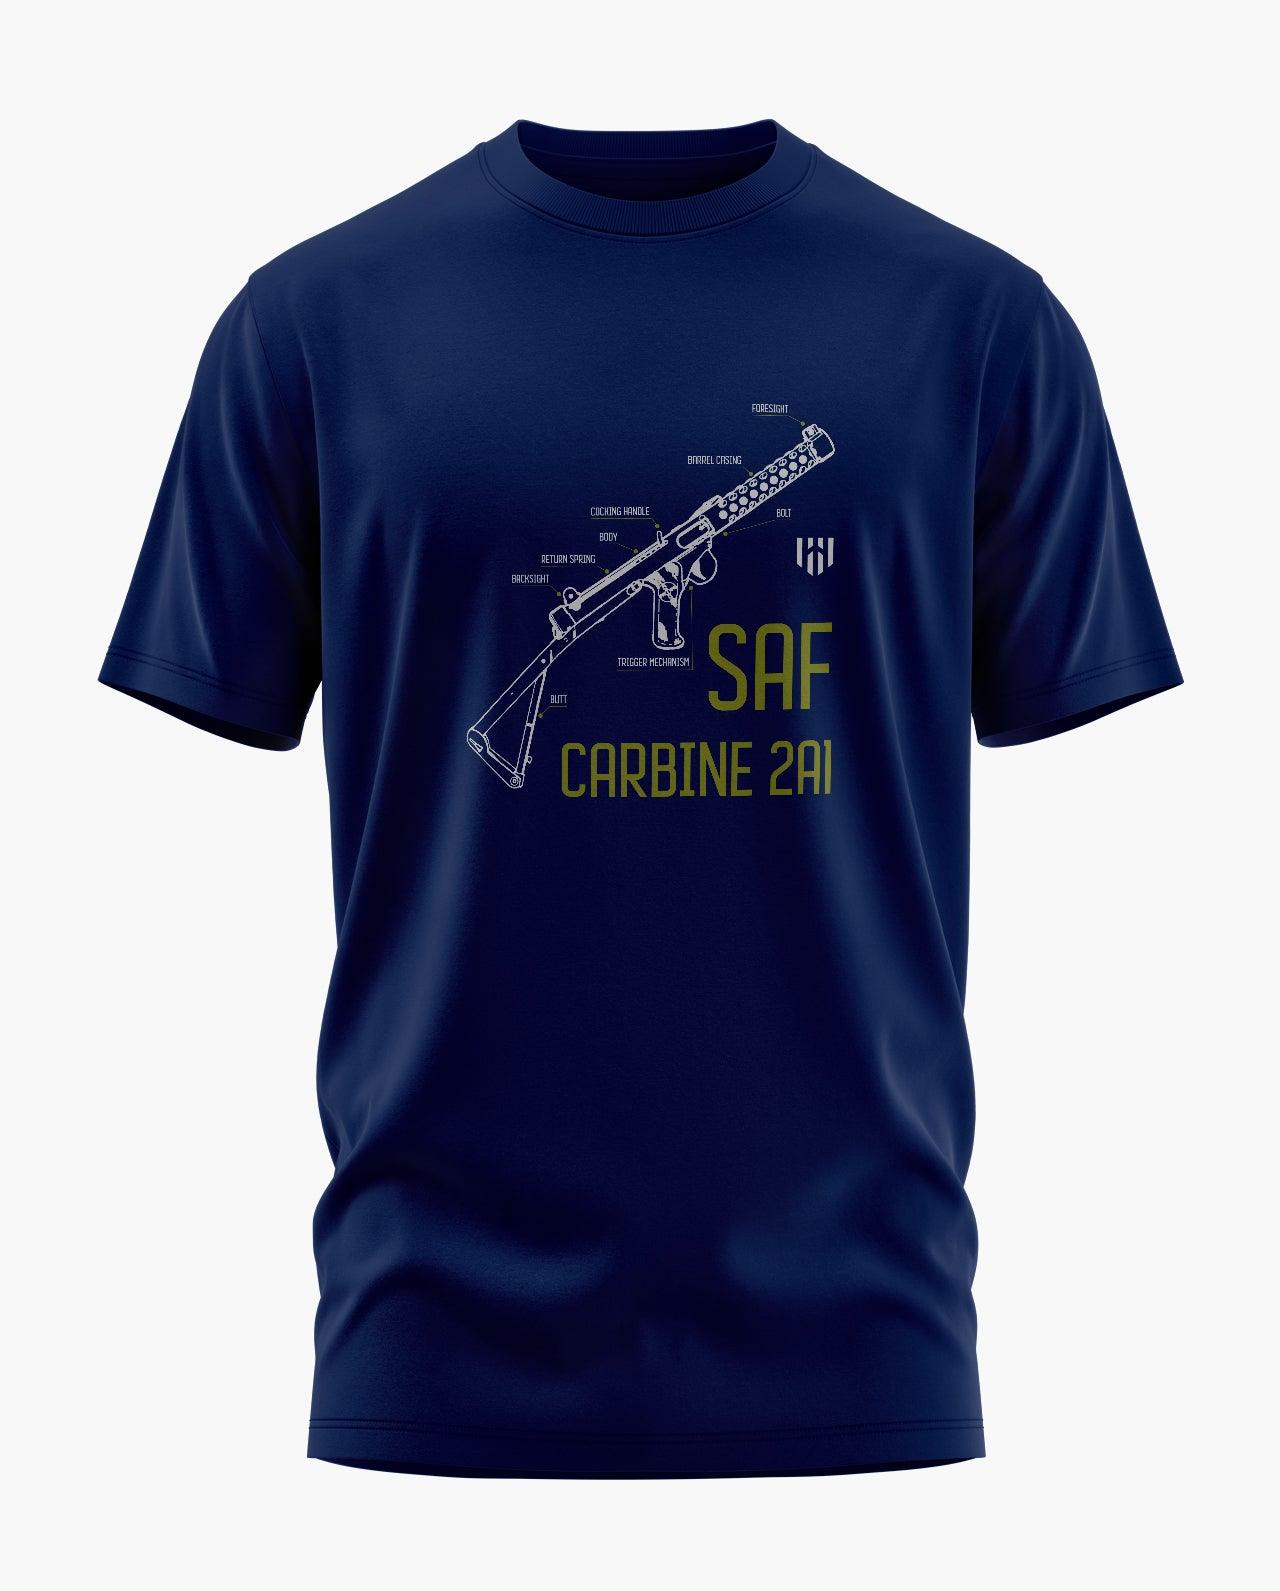 SAF CARBINE 2A1 T-Shirt - Aero Armour